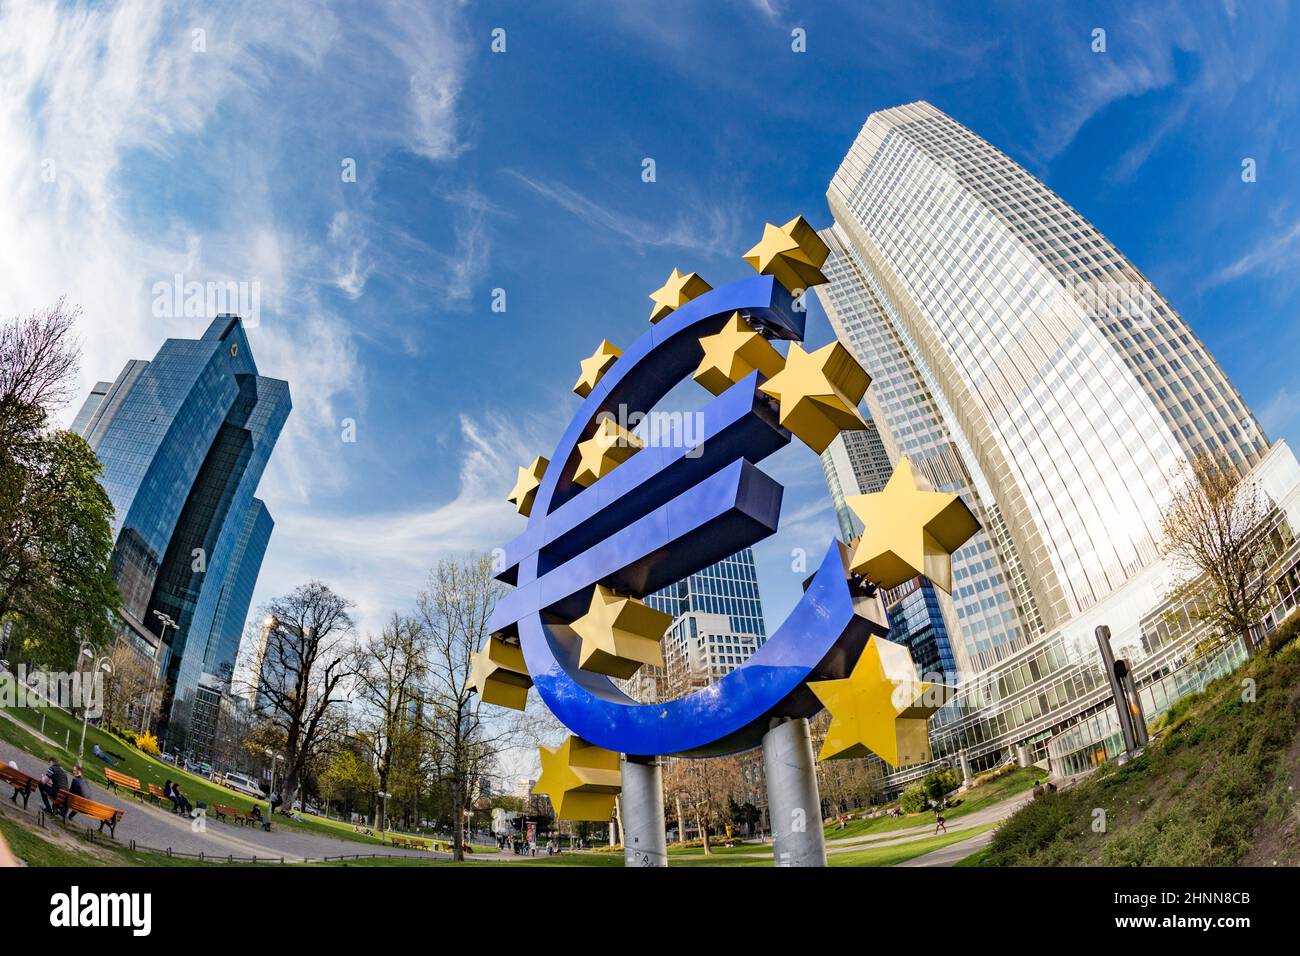 Signe euro. La Banque centrale européenne (BCE) est la banque centrale de l'euro et gère la politique monétaire de la zone euro à Francfort, en Allemagne Banque D'Images